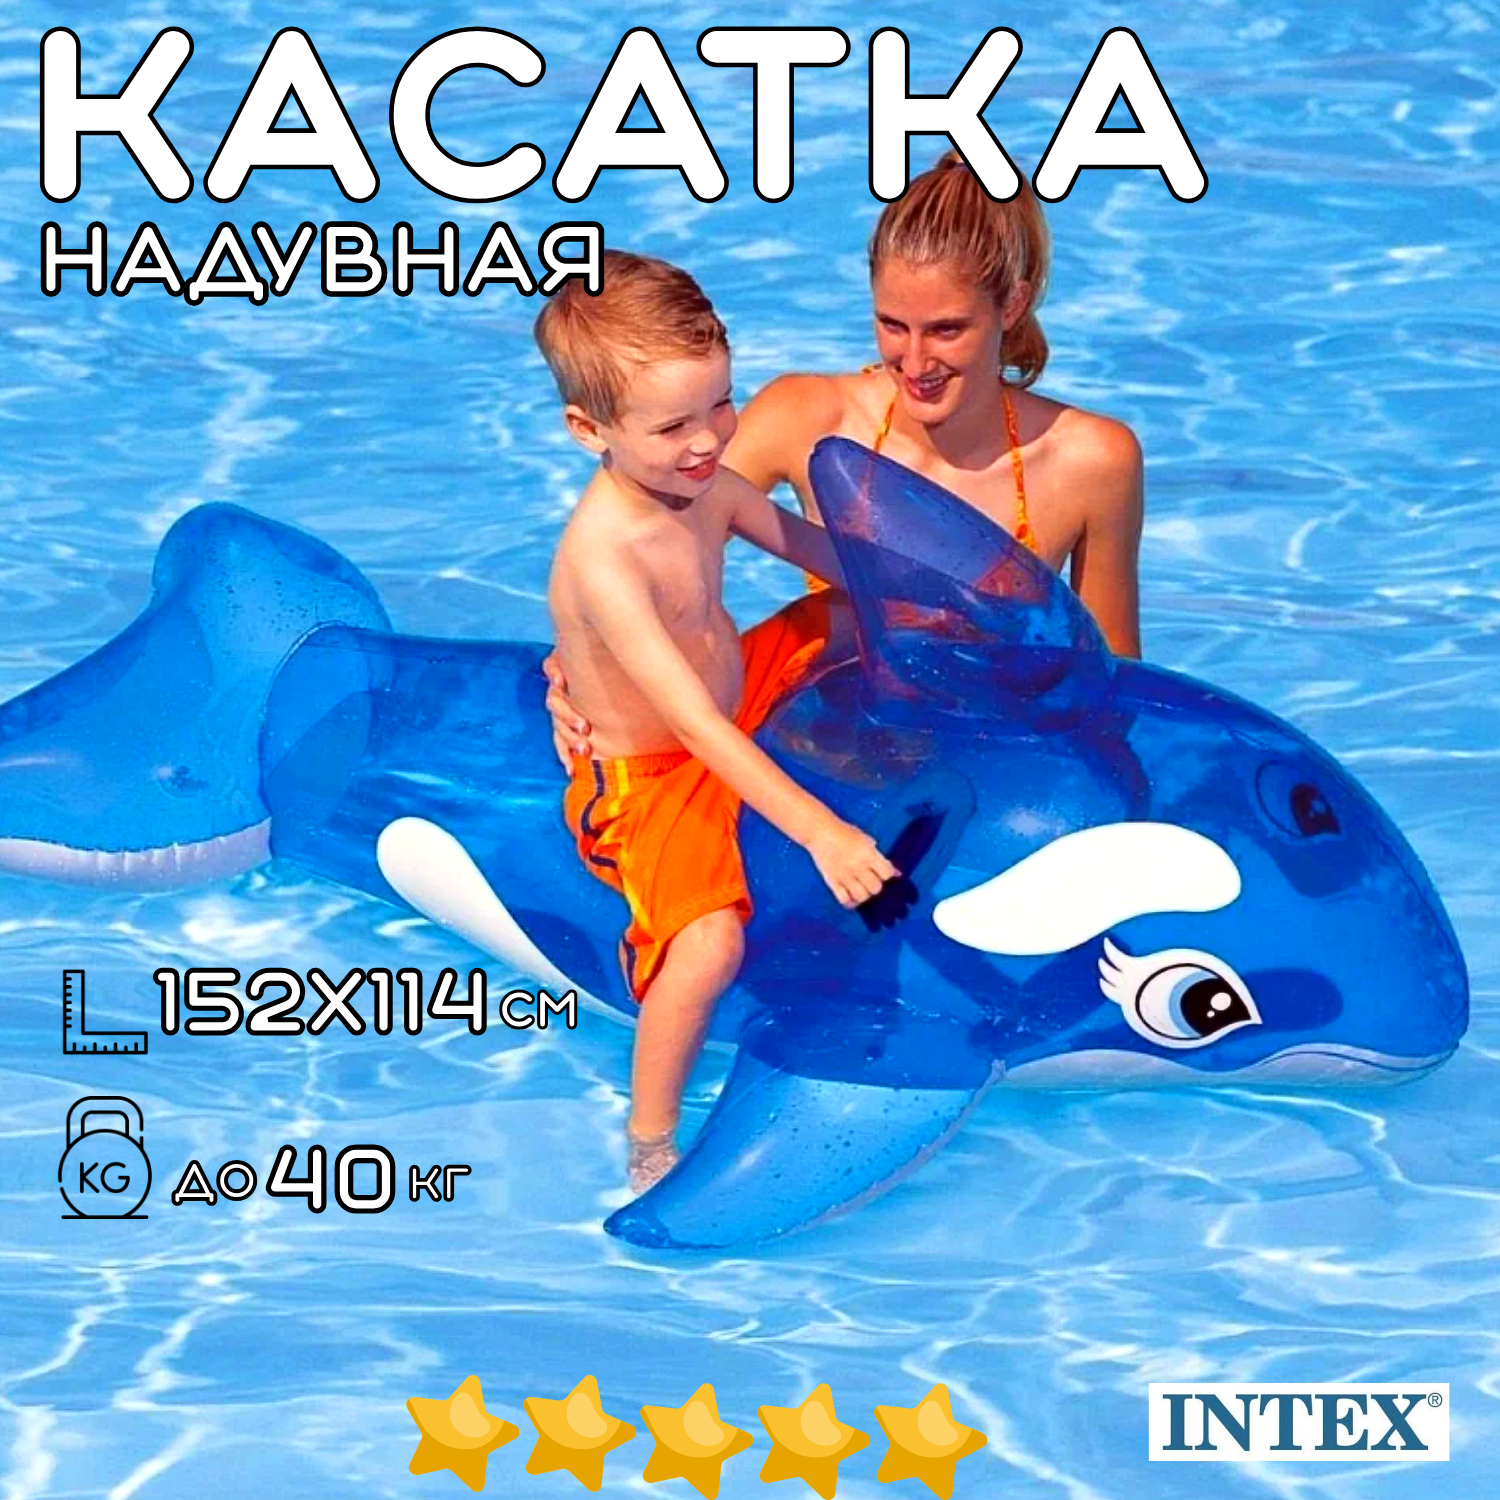 Надувная игрушка для плавания верхом INTEX Касатка синяя 152х114 см, с ручками надувной круг, пляжный матрас - наездник, нагрузка до 40 кг, возраст до 14 лет / 1 шт